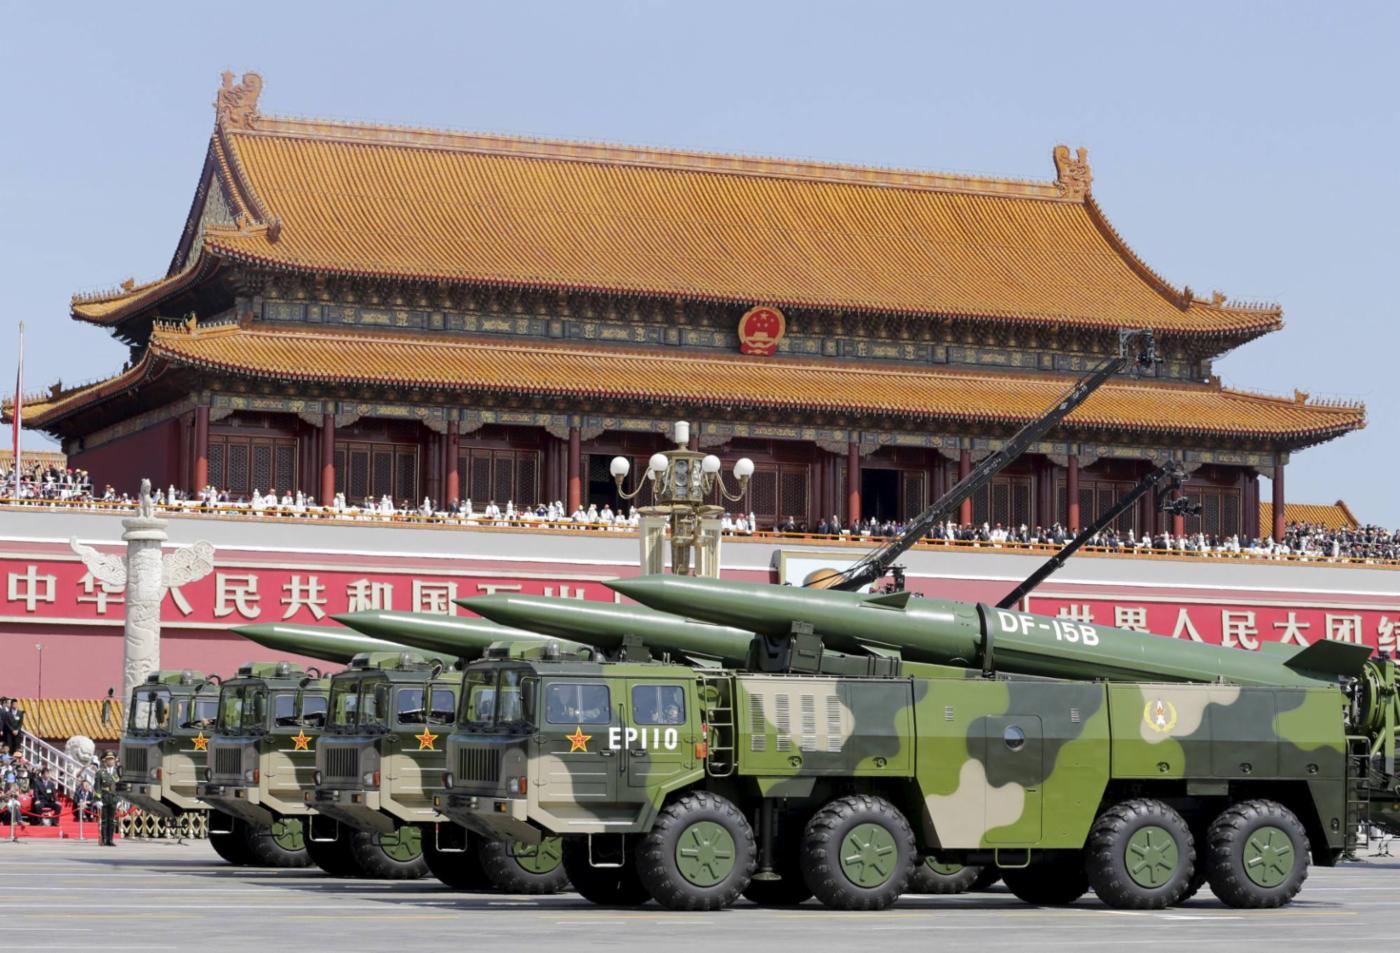  Подъем Китая: в белой книге обороны Японии 2021 года утверждается, что Китай «занимается широкомасштабным и быстрым количественным и качественным совершенствованием военной мощи». © Reuters
